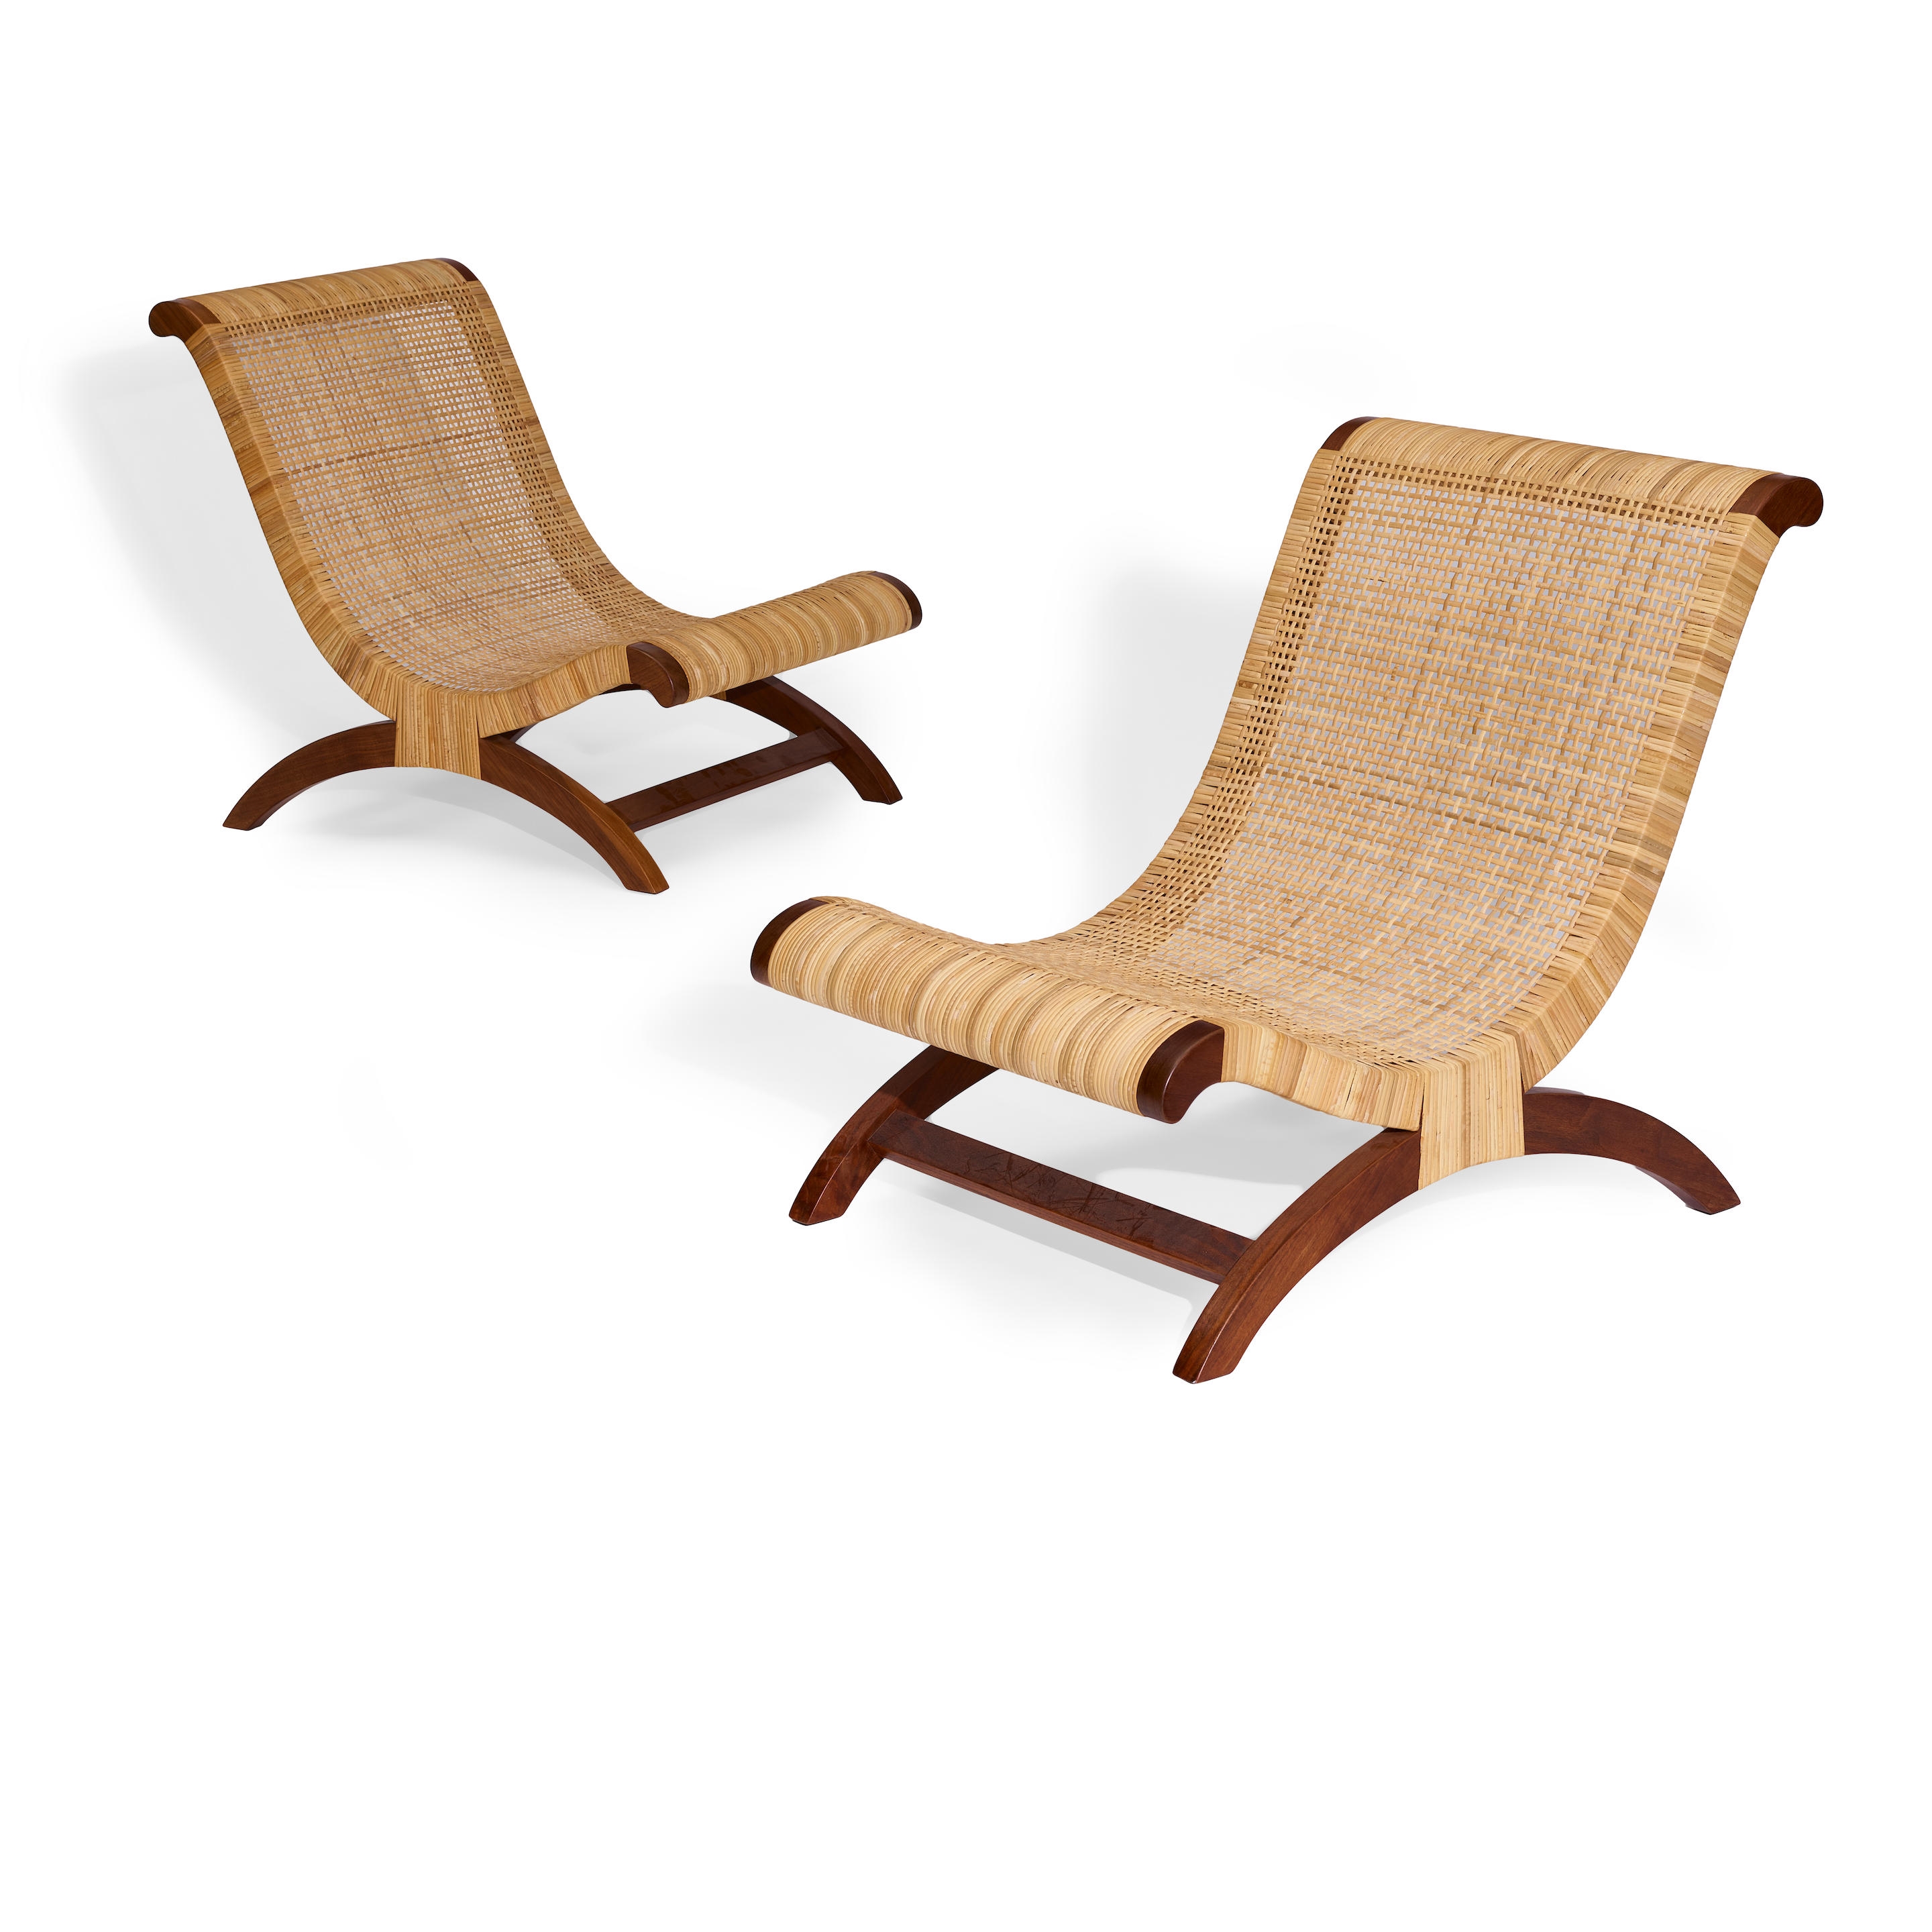 Pair of Butaque Chairs - Clara Porset